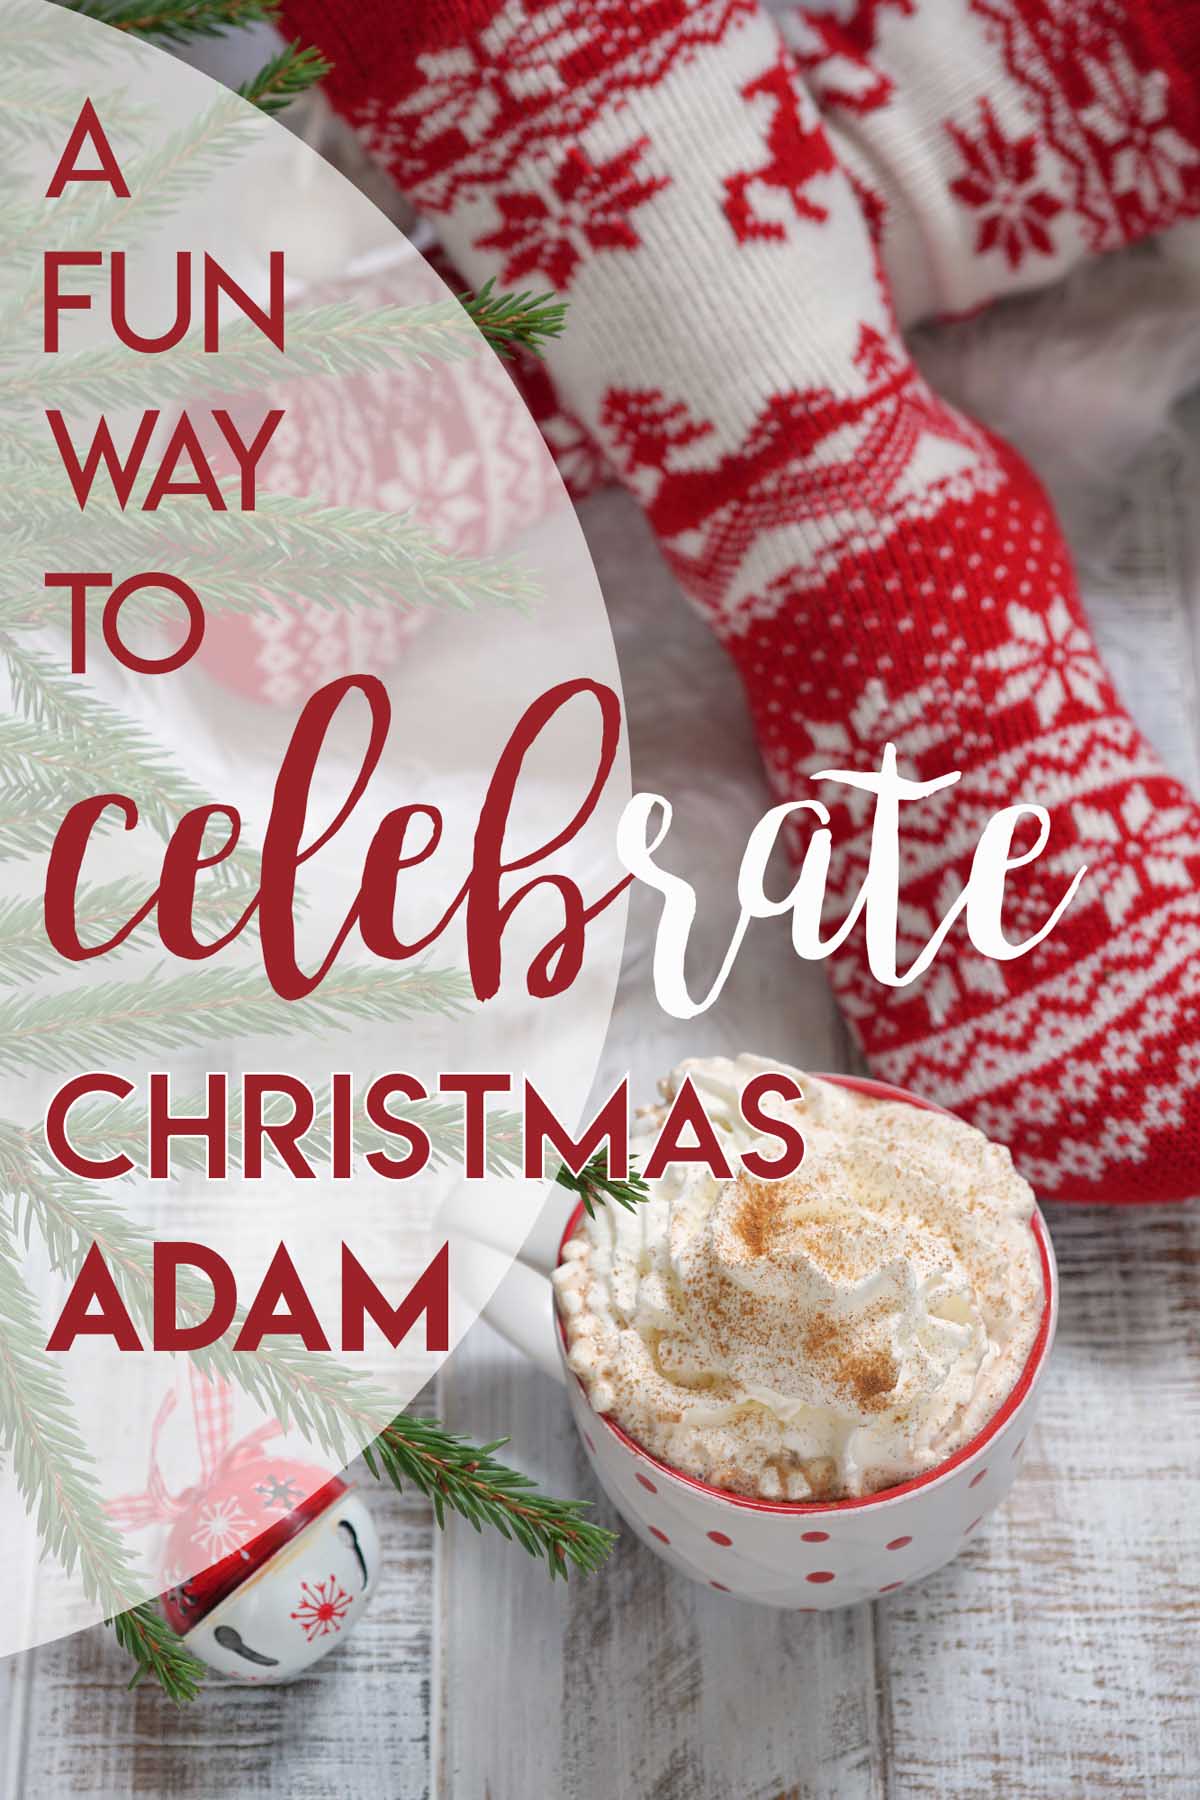 A Fun Family Tradition for Christmas Adam via @lara_neves